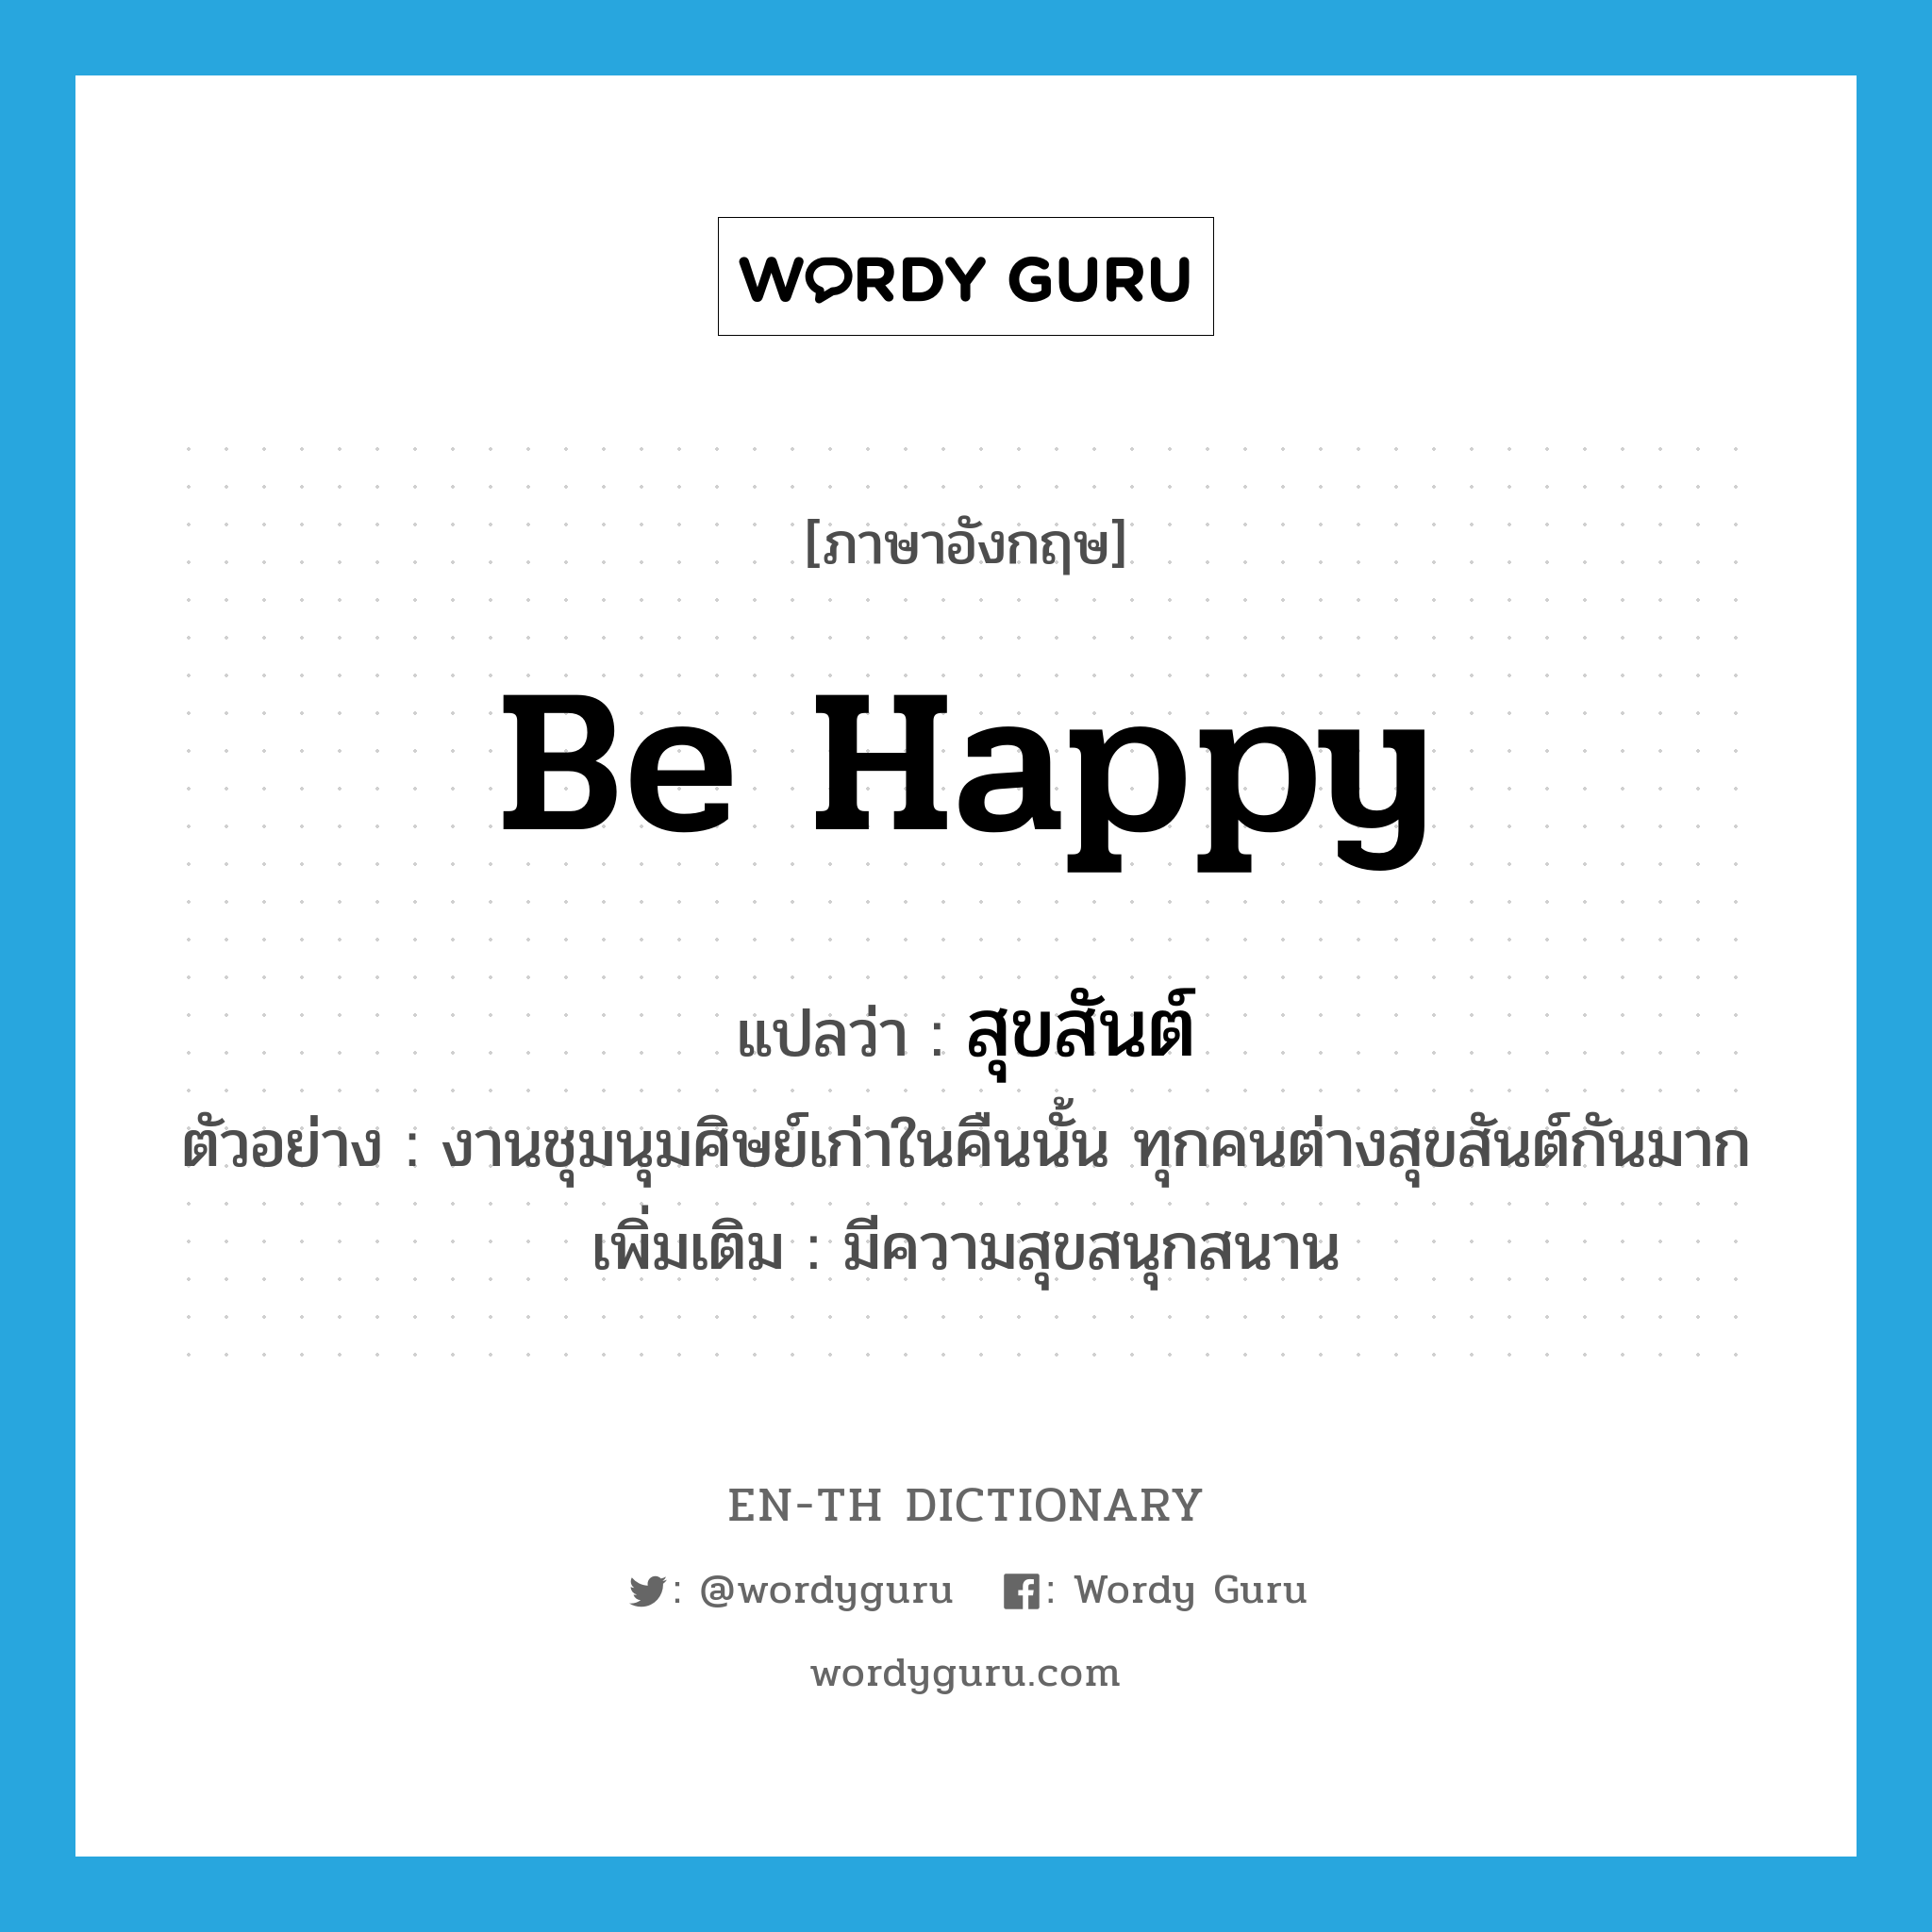 สุขสันต์ ภาษาอังกฤษ?, คำศัพท์ภาษาอังกฤษ สุขสันต์ แปลว่า be happy ประเภท V ตัวอย่าง งานชุมนุมศิษย์เก่าในคืนนั้น ทุกคนต่างสุขสันต์กันมาก เพิ่มเติม มีความสุขสนุกสนาน หมวด V